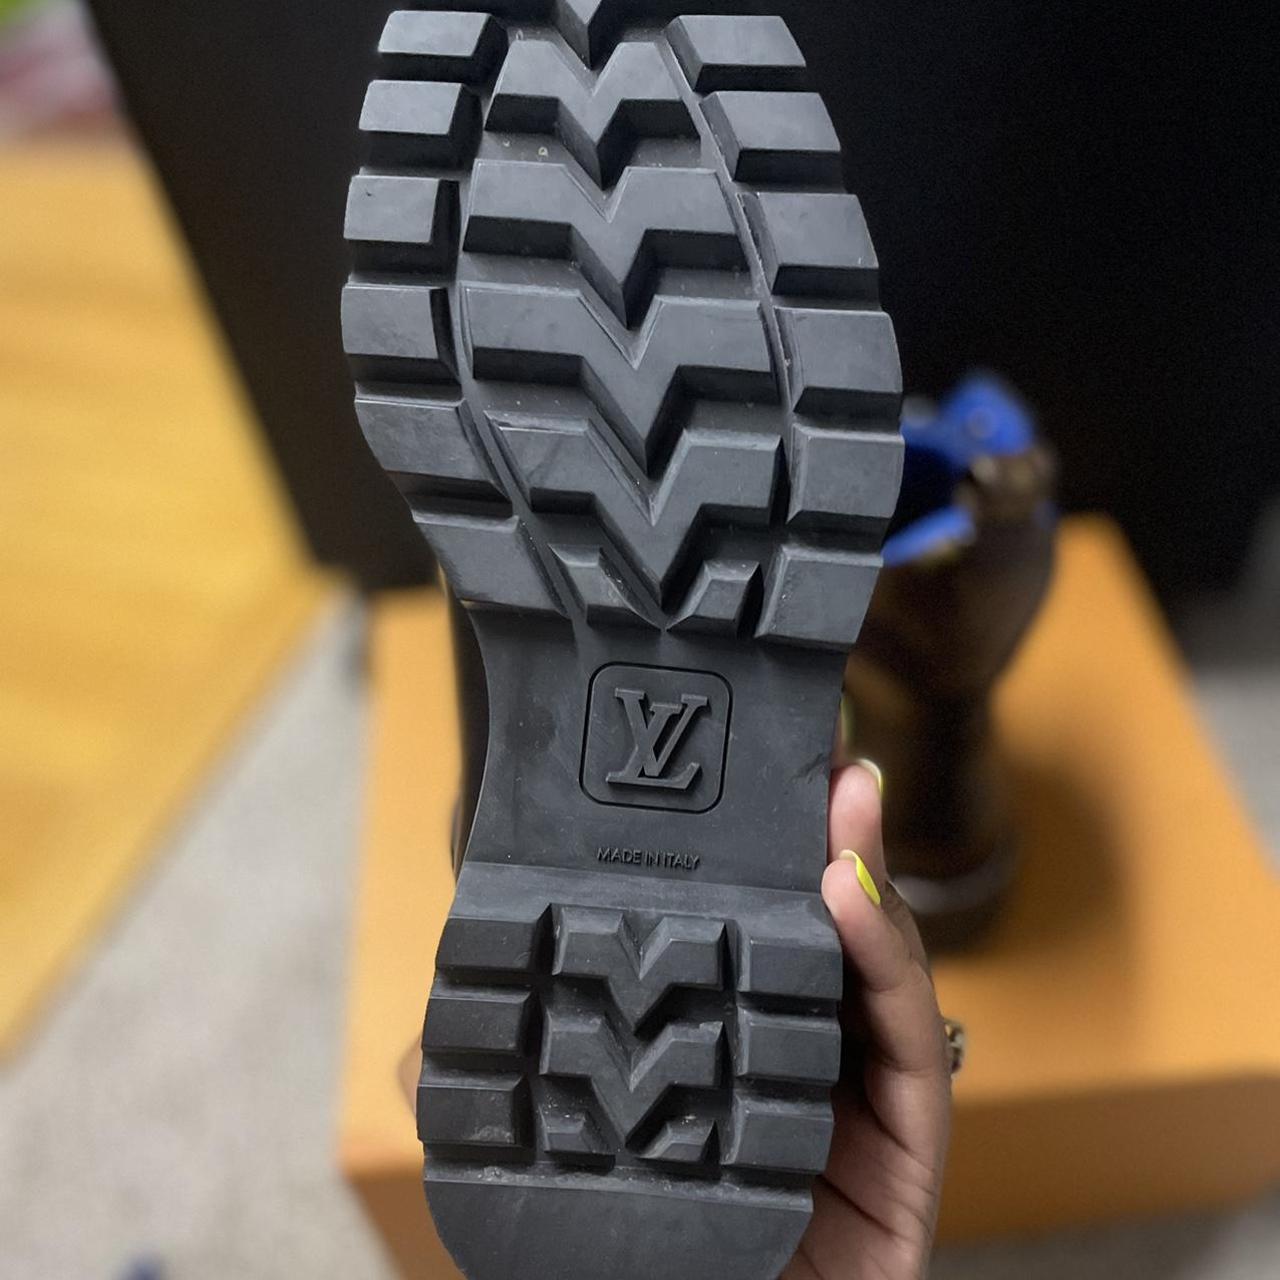 Louis Vuitton lace up boots! Platform! US - Depop